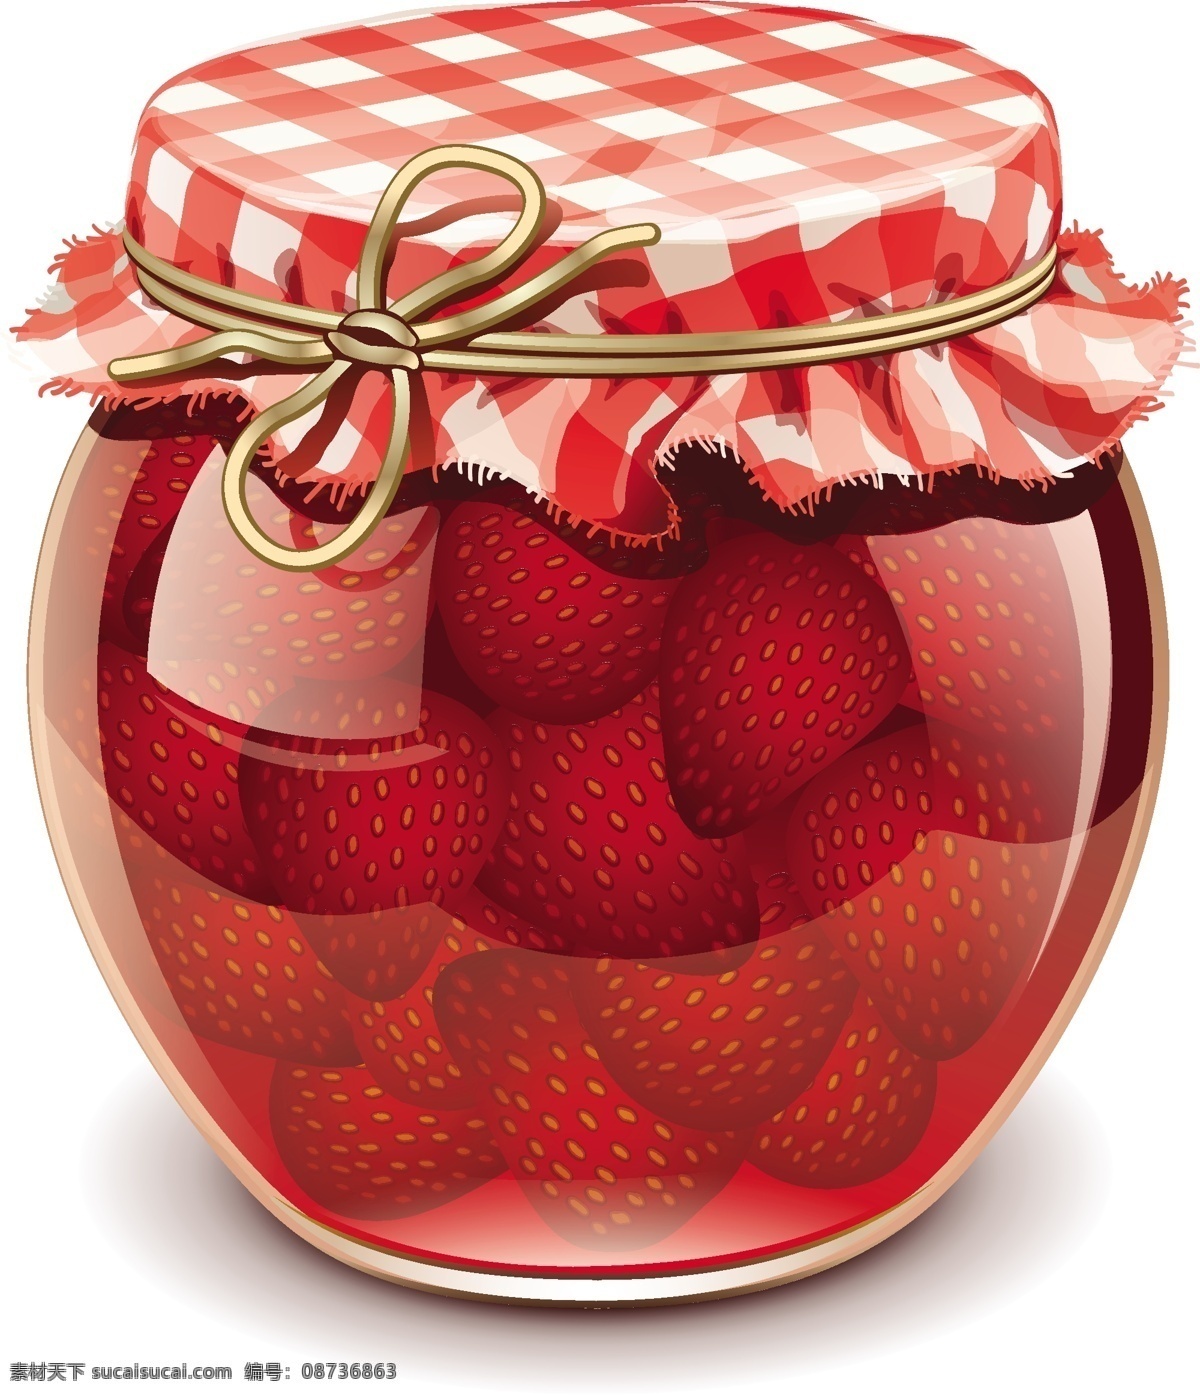 精美 水果罐头 矢量 草莓 罐头 蓝莓 水果 矢量图 其他矢量图